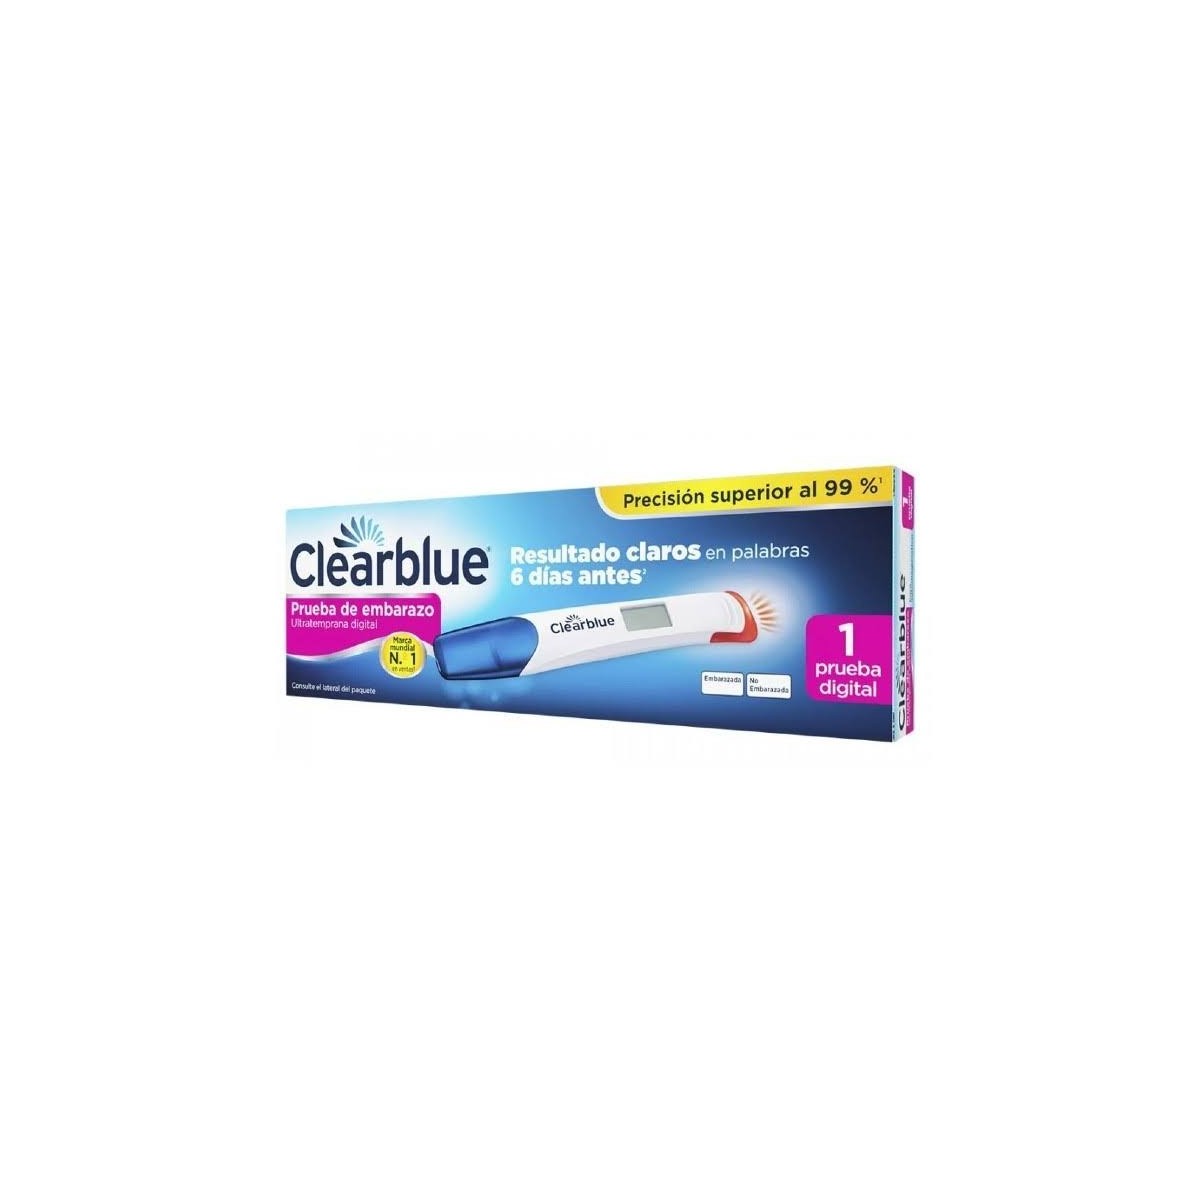 clearblue-detecc-ultratemprana